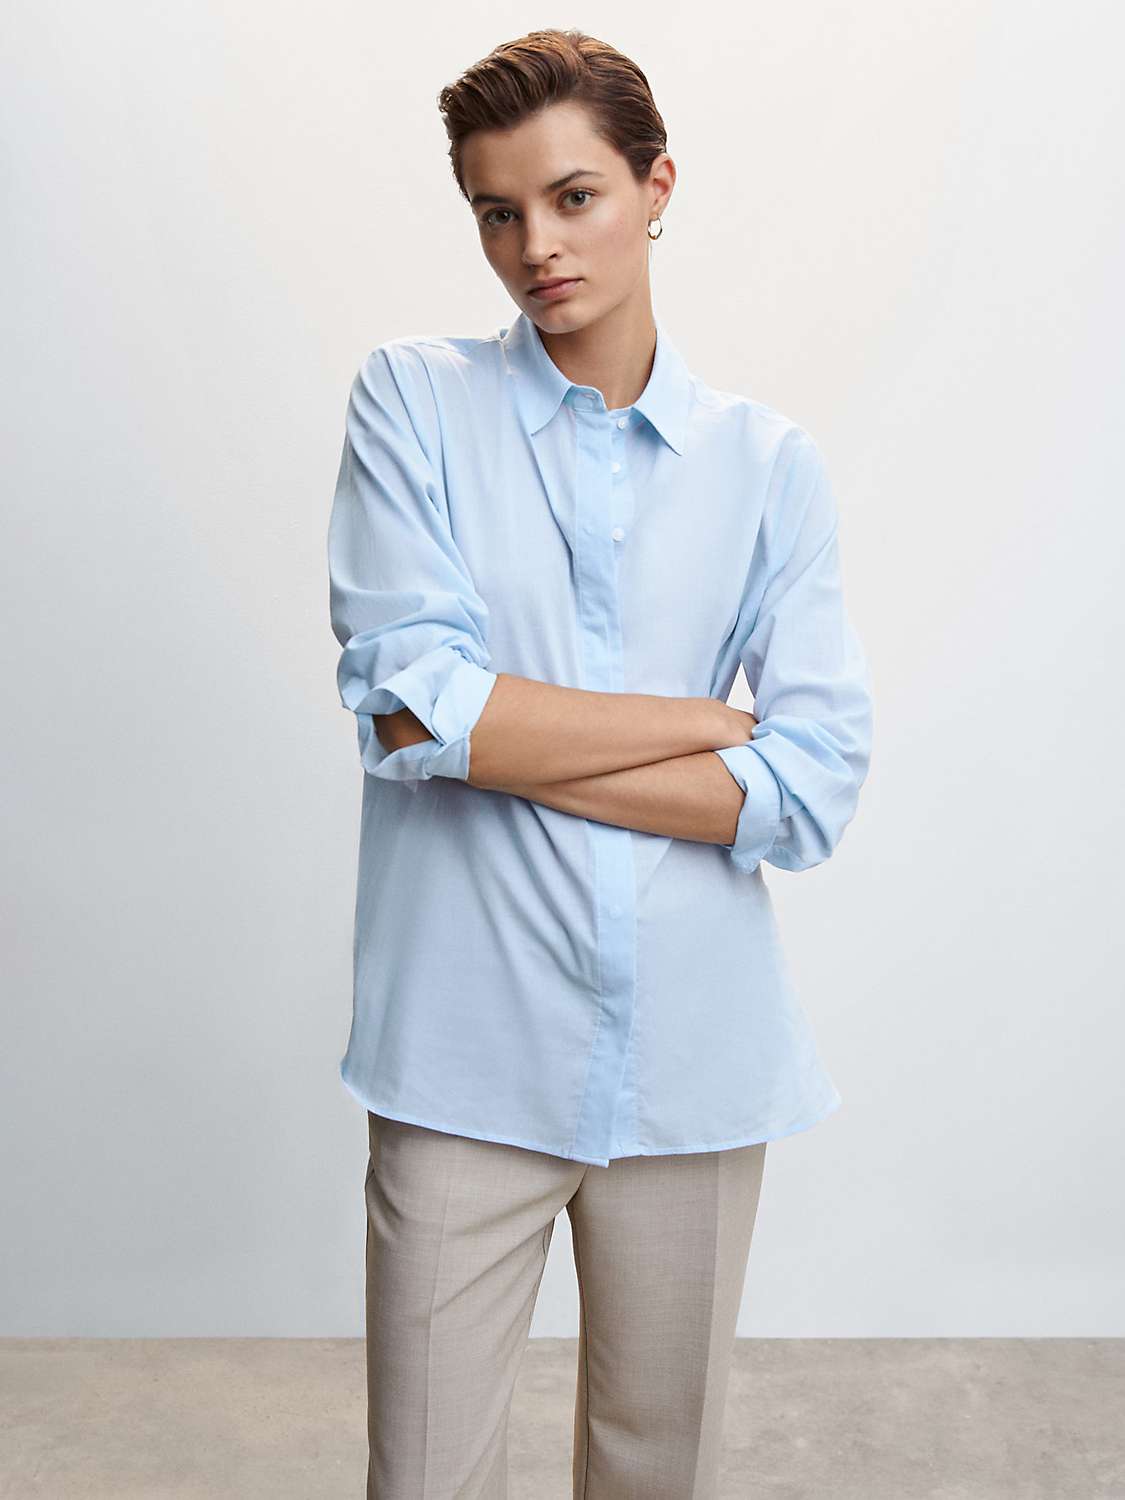 Mango Voila Cotton Shirt, Pale Blue at John Lewis & Partners